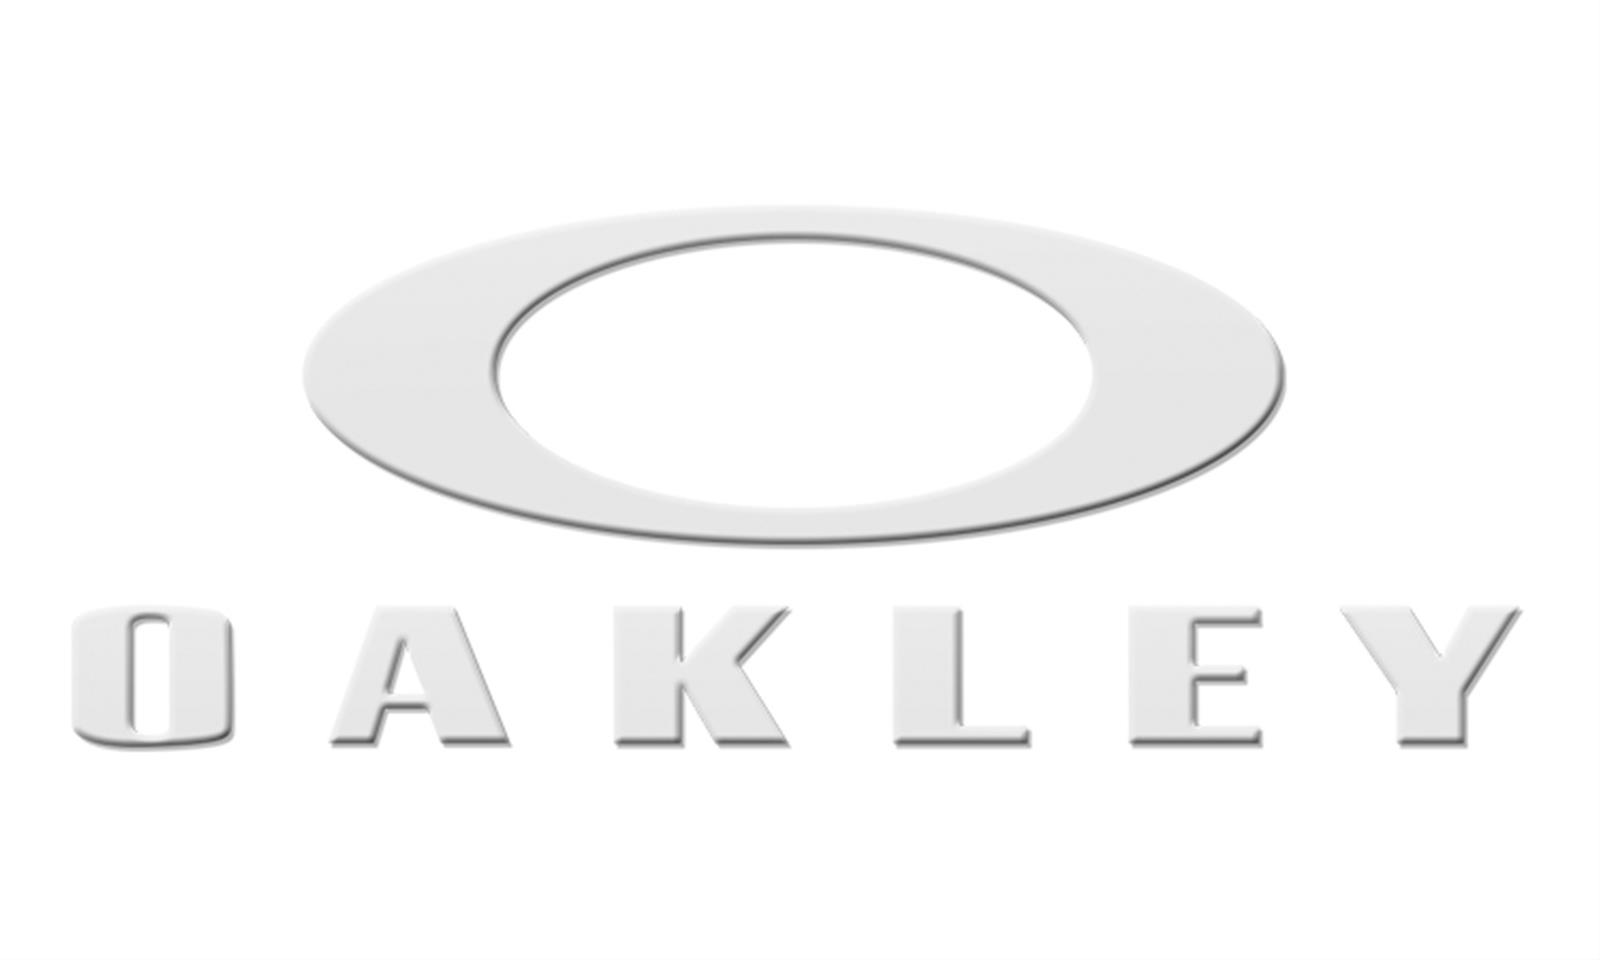 Oakley 22-074 Oakley Foundation Logo Stickers